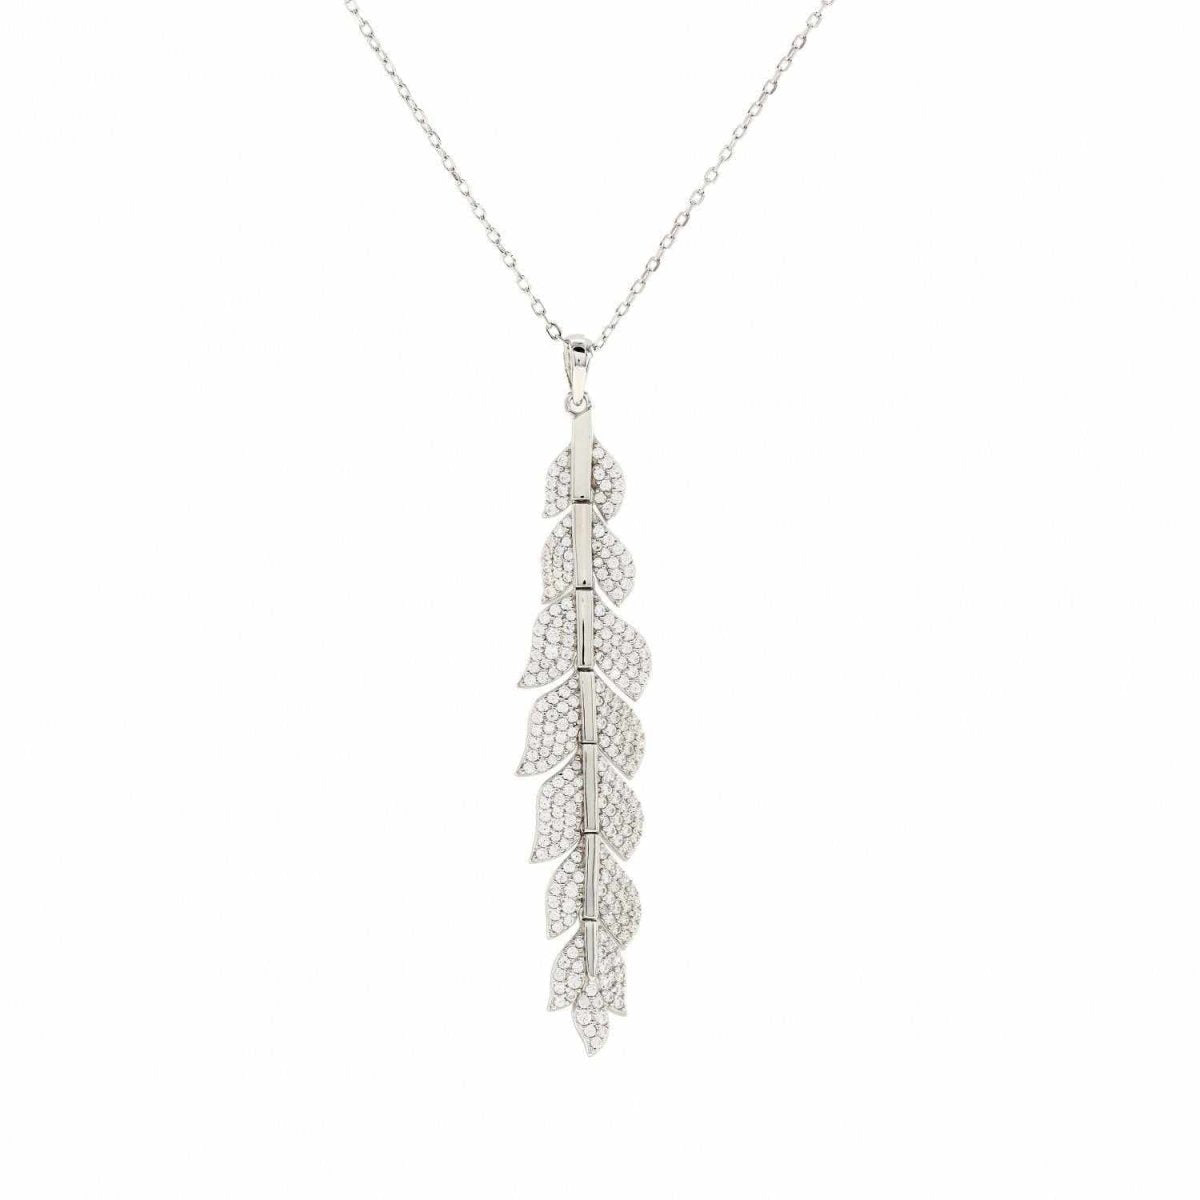 Necklaces - Original silver necklaces leaf design with zircons